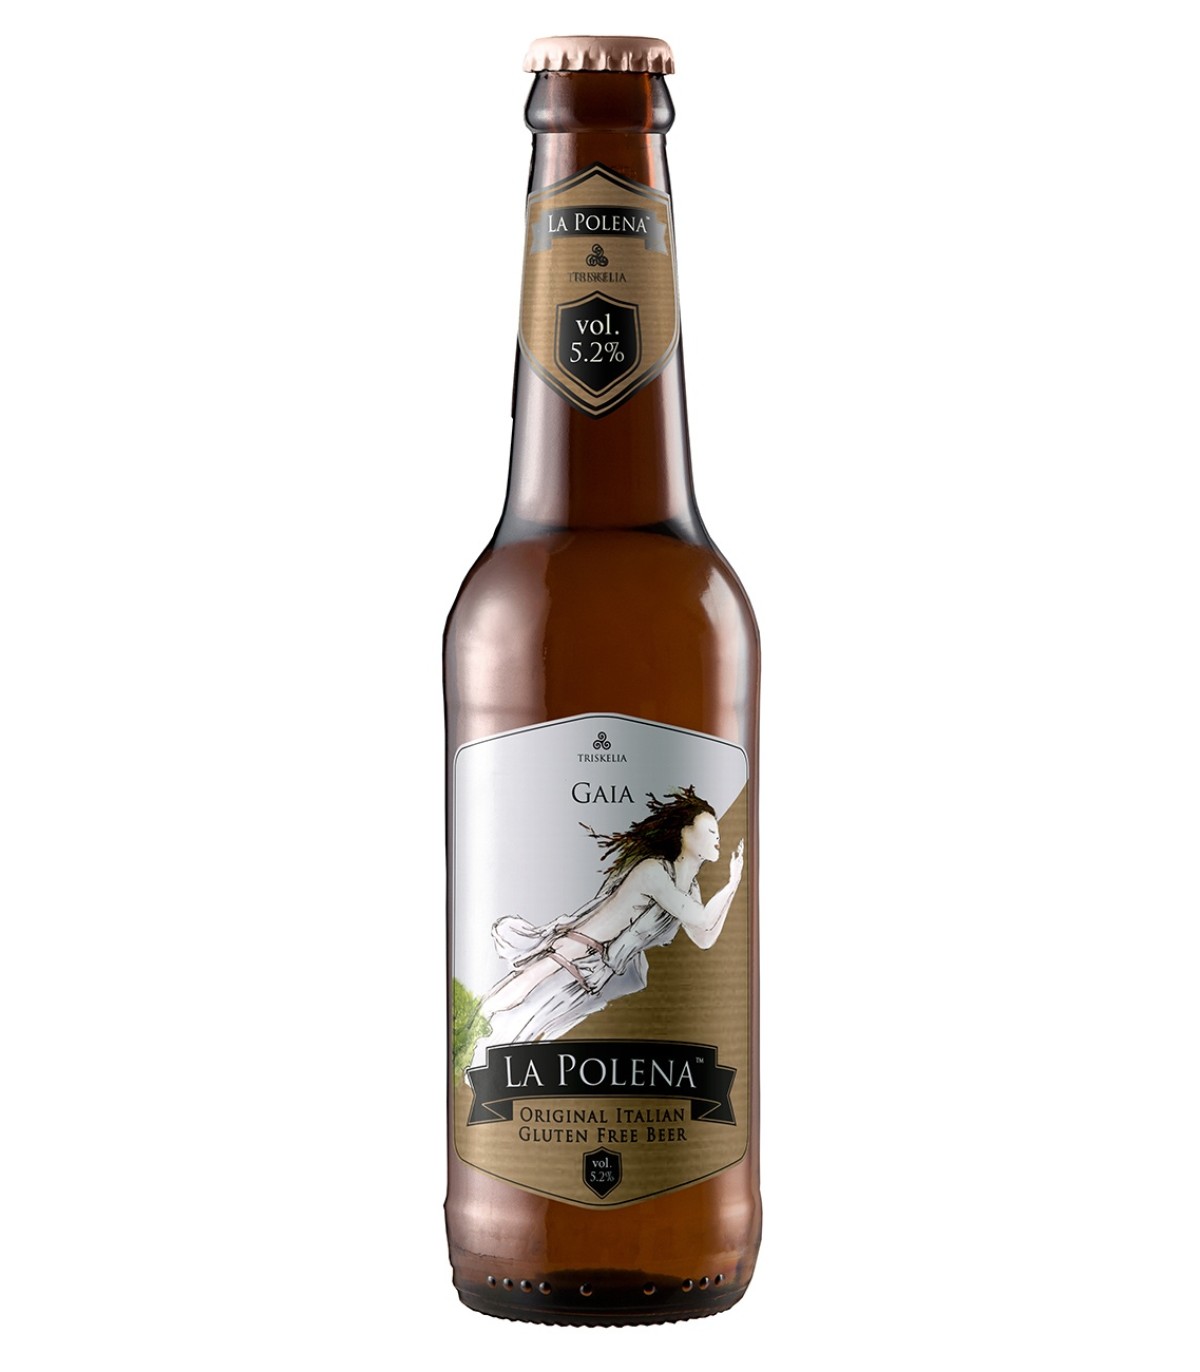 Gaia gluten-free blonde beer 5.2% Vol. - La Polena